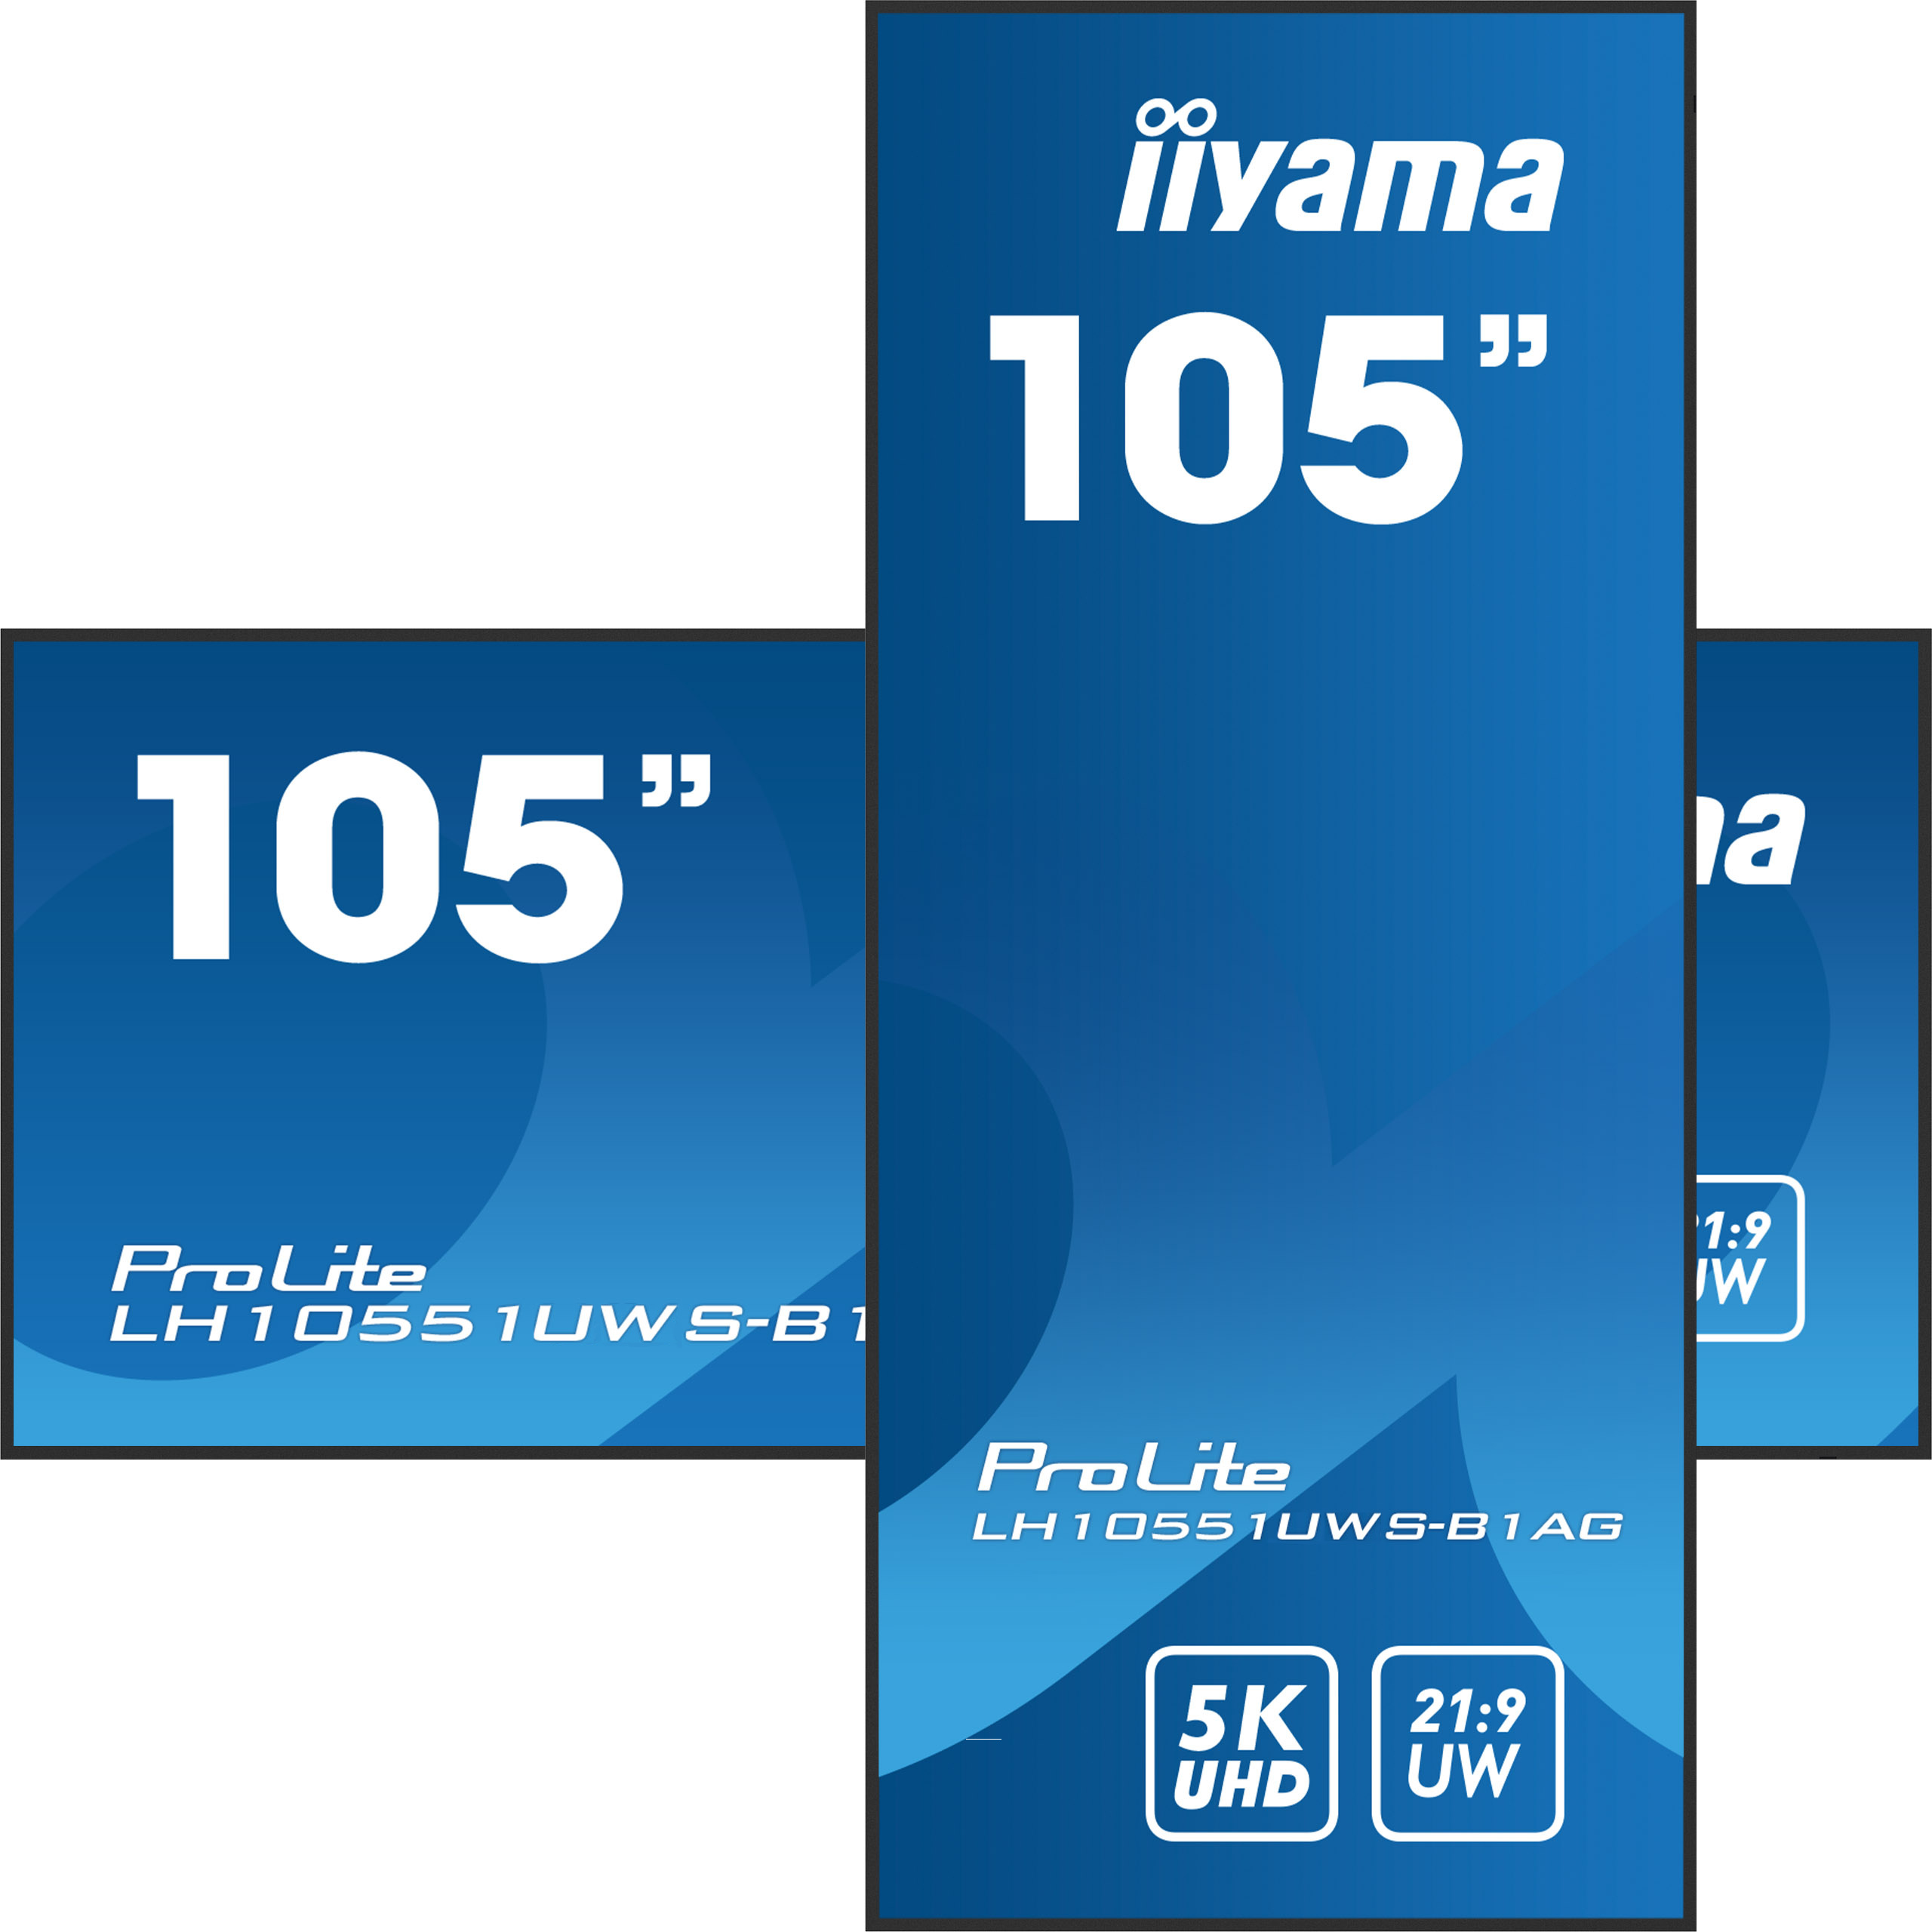 iiyama ProLite LH10551UWS-B1AG - 105 inch - 500 cd/m² - 21:9 Ultrawide - 5120x2160 - 24/7 - Stretch Display